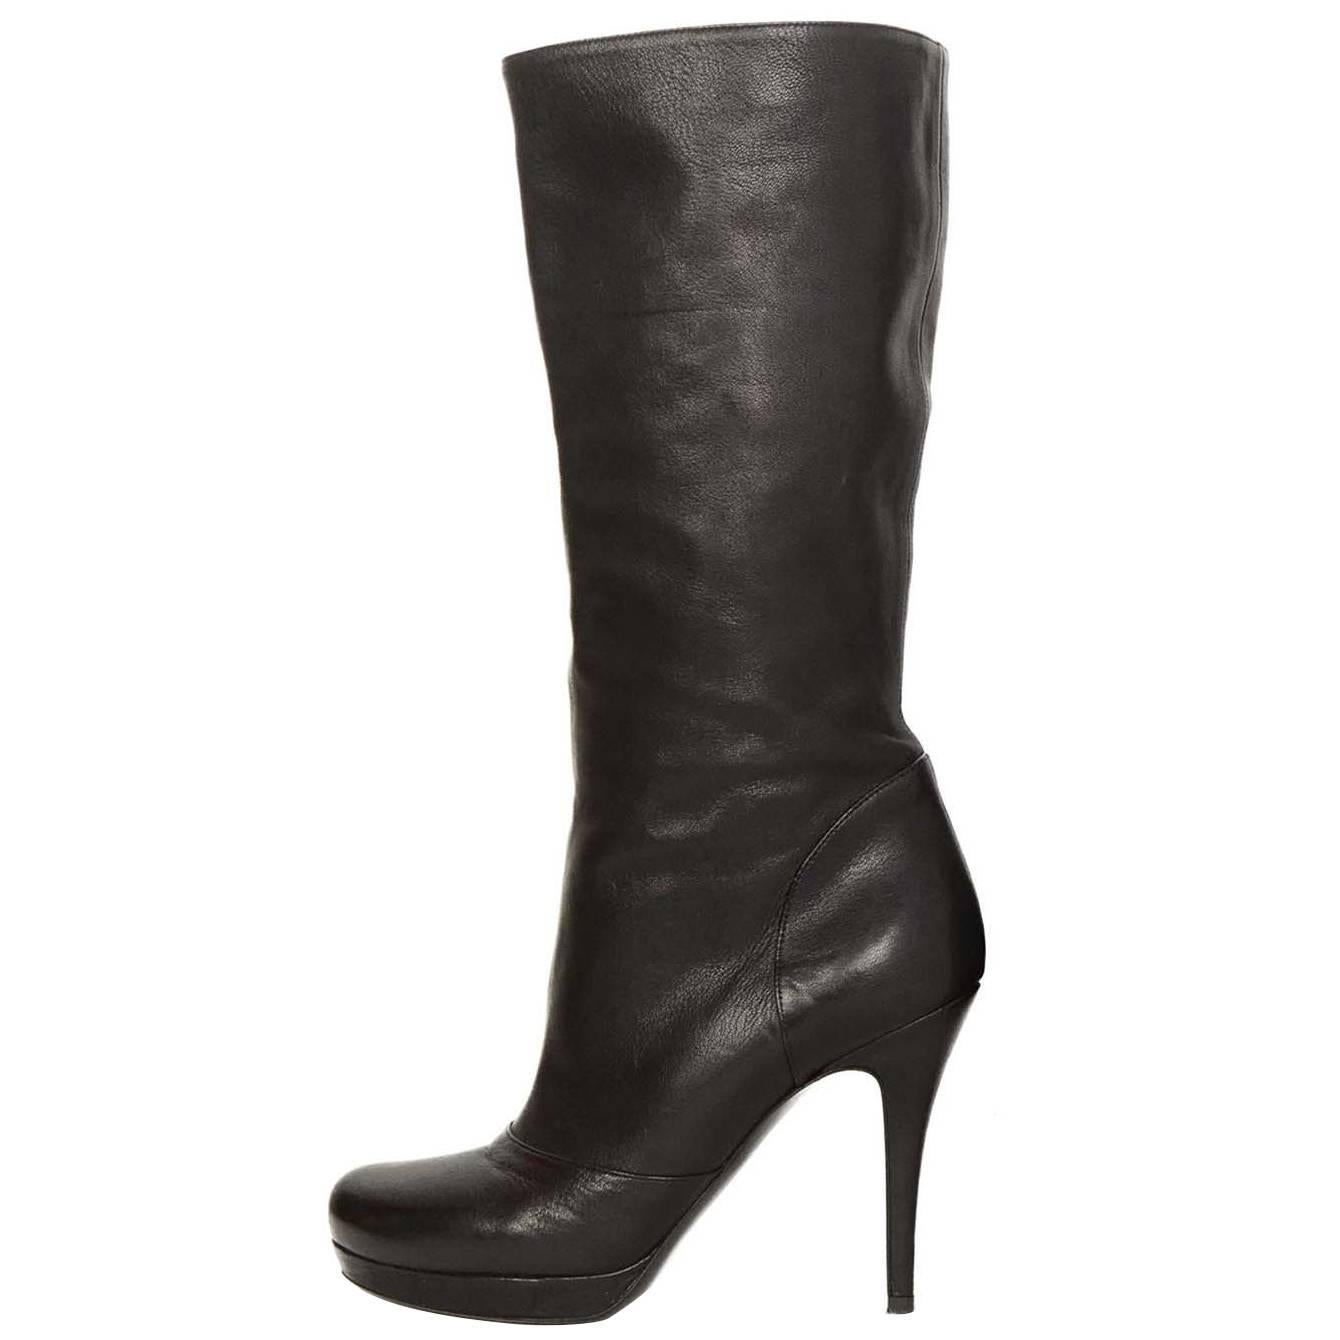 Yves Saint Laurent YSL Black Leather Boots sz 37